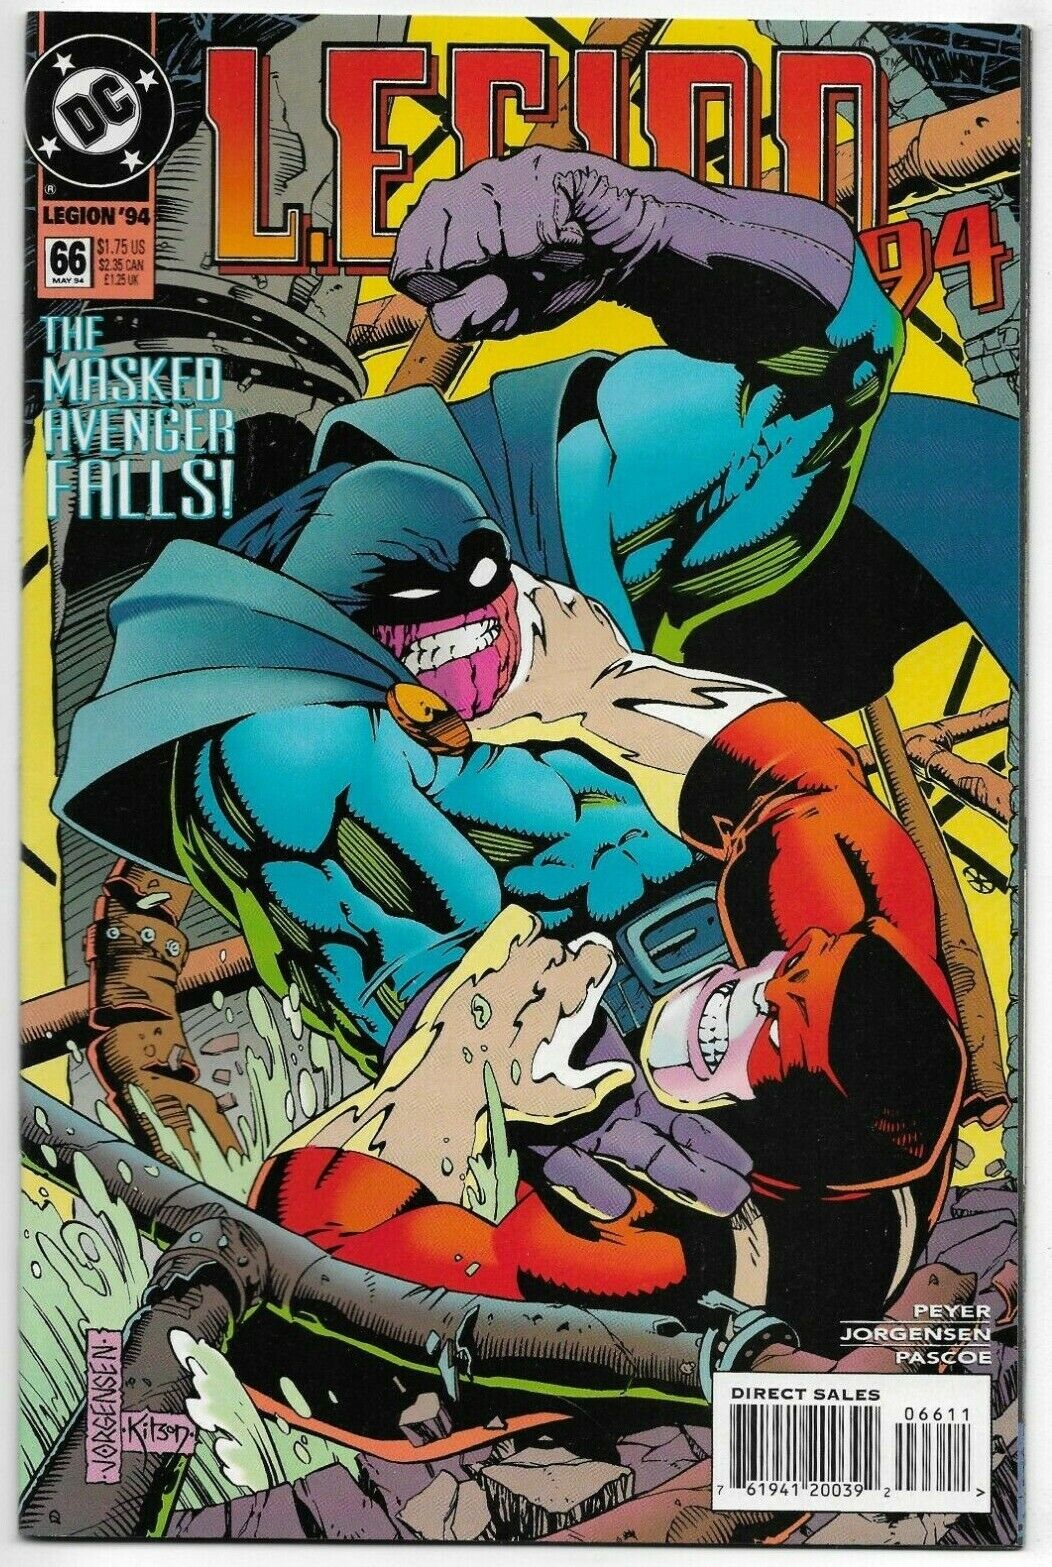 L.E.G.I.O.N. 94 #66 DC Comics 1994 VF+ 